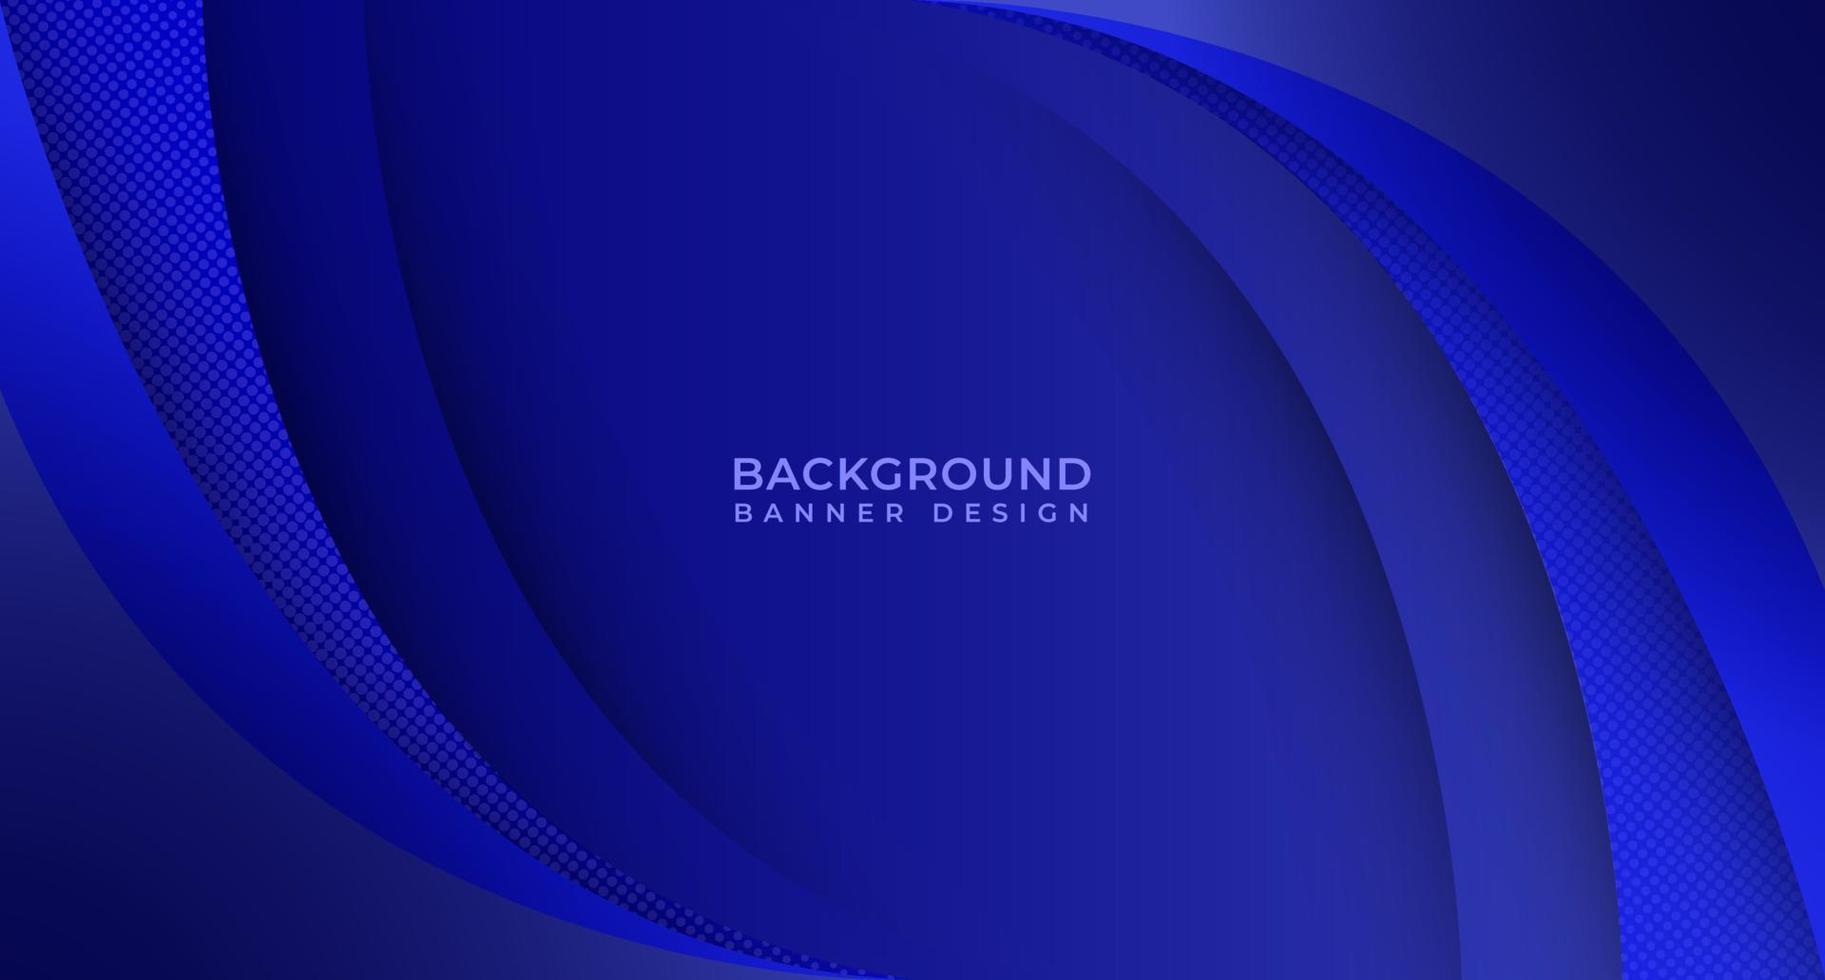 Elegant Blue Background Template Design For Banner, Flyer, Business Presentation And Website Background vector